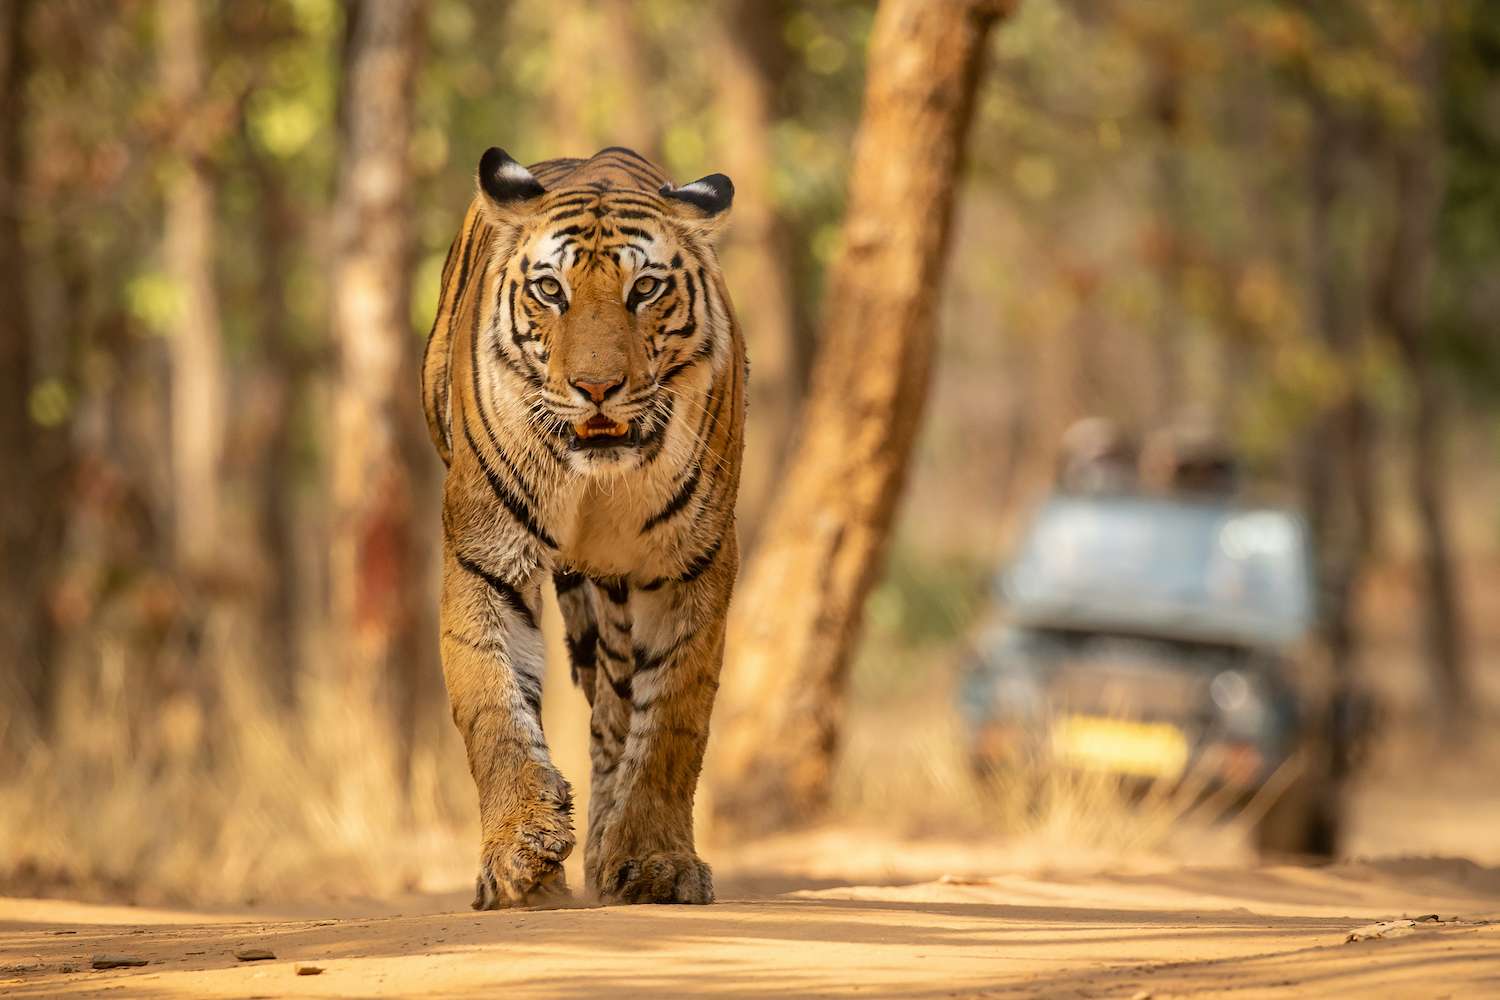 Tiger in Bandhavgarh National Park India